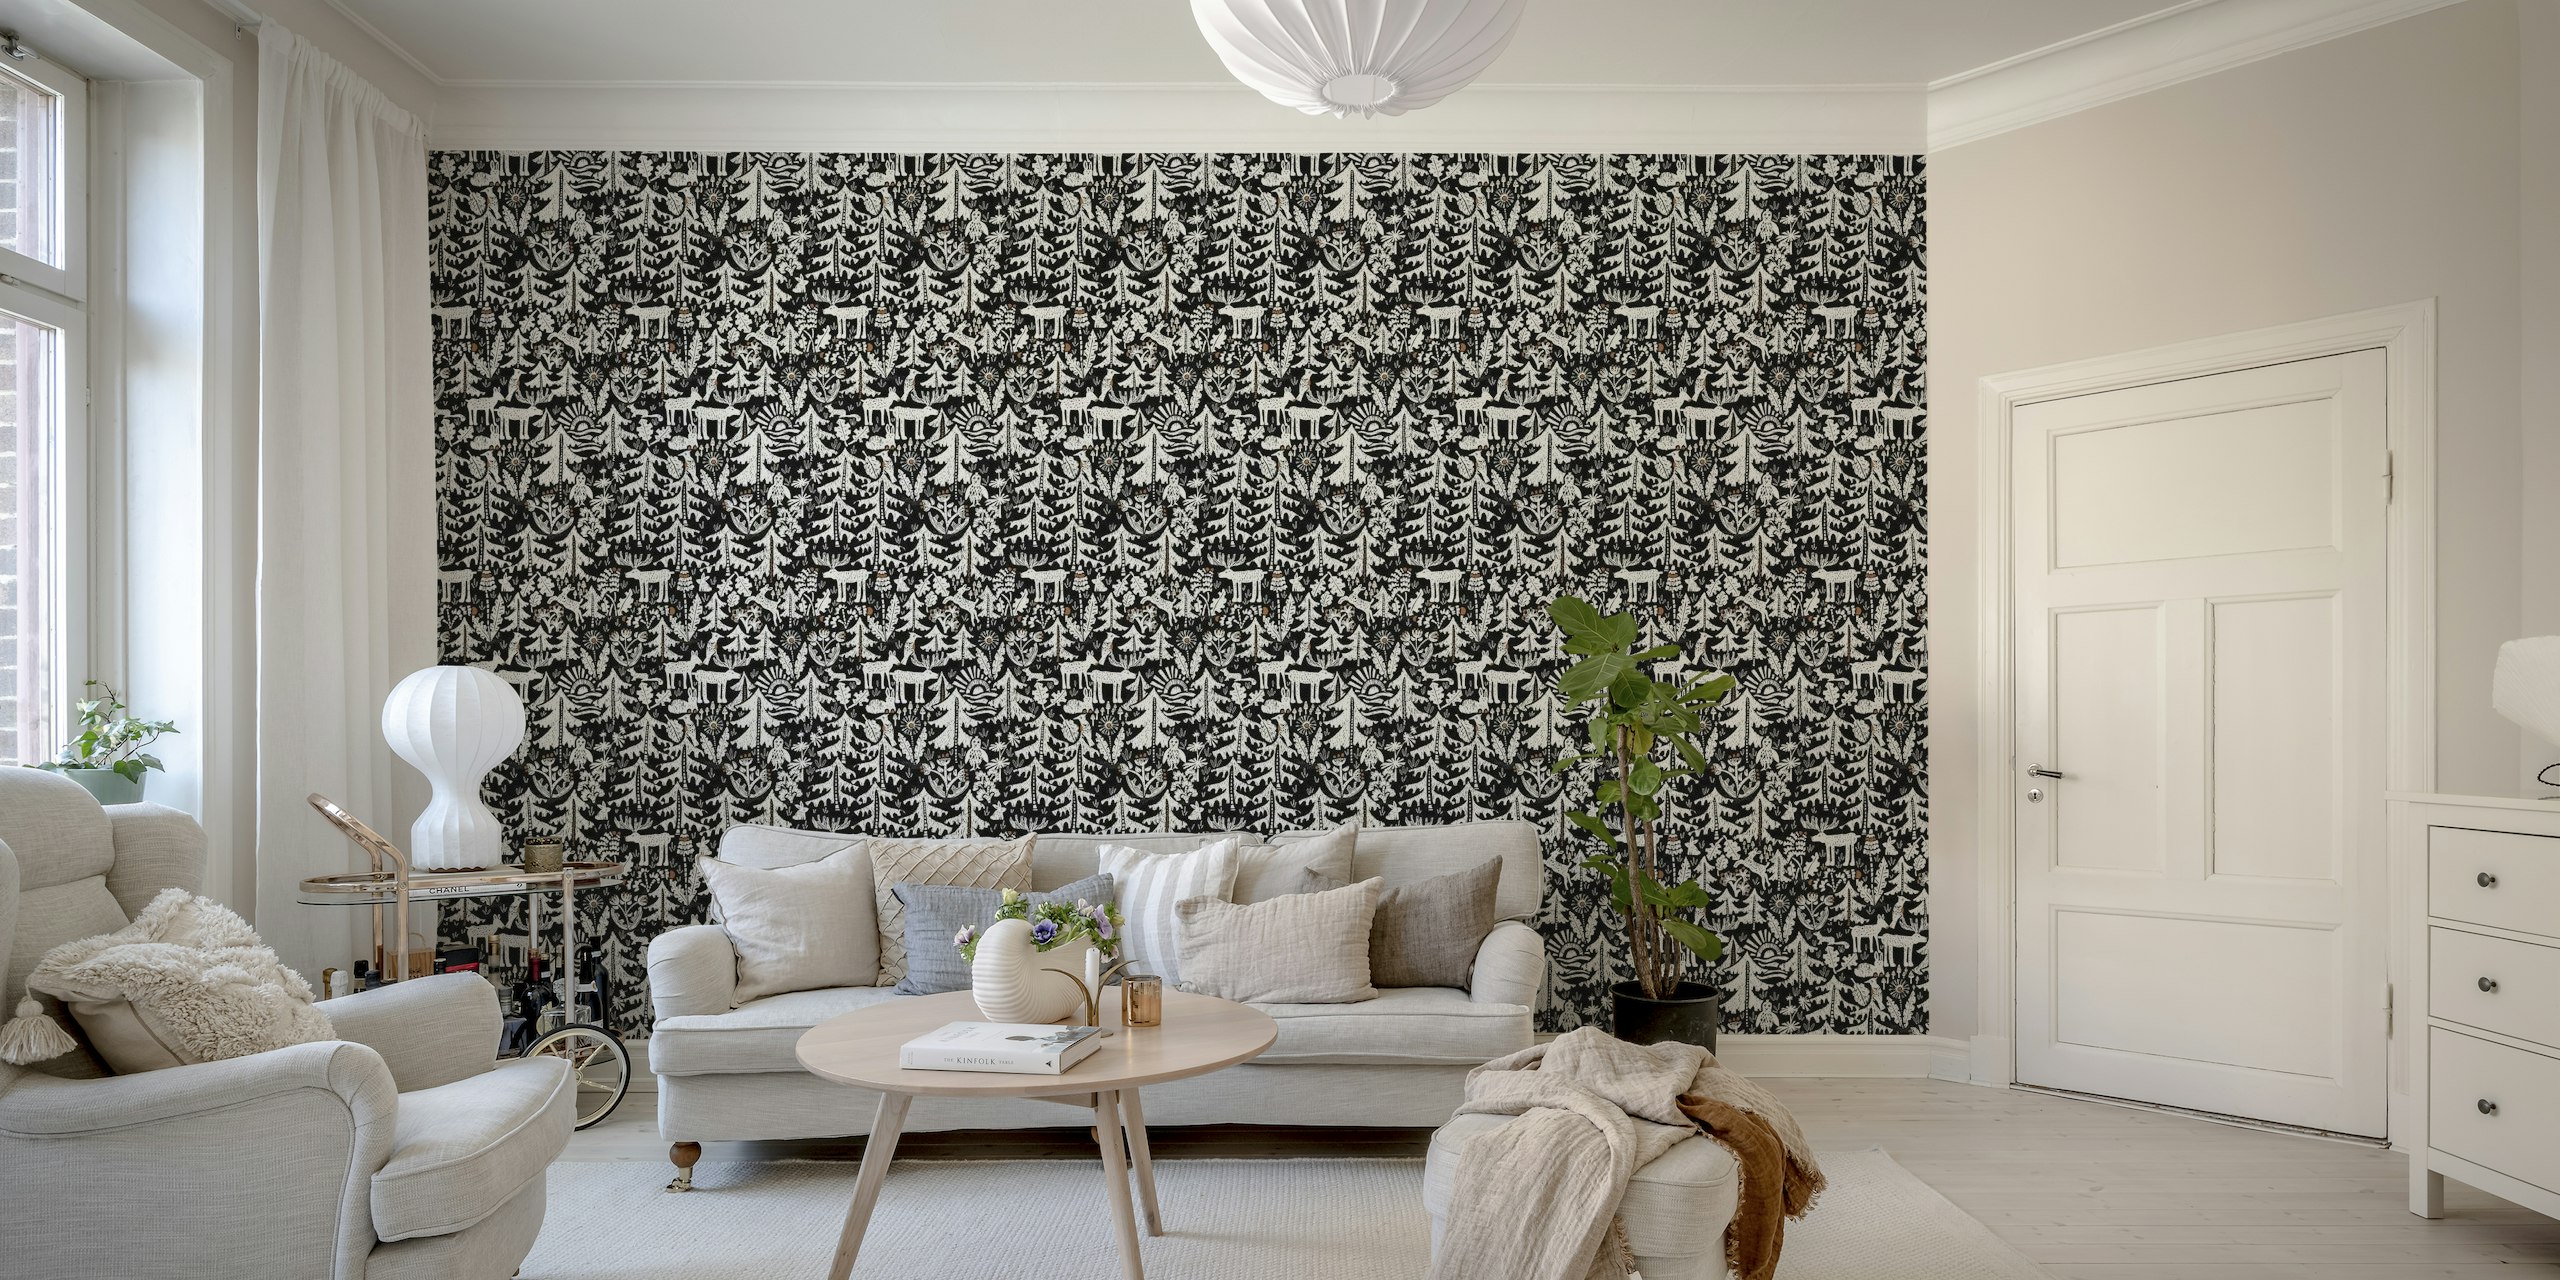 Mural de parede preto e branco da Floresta Negra com árvores estilizadas e vida selvagem